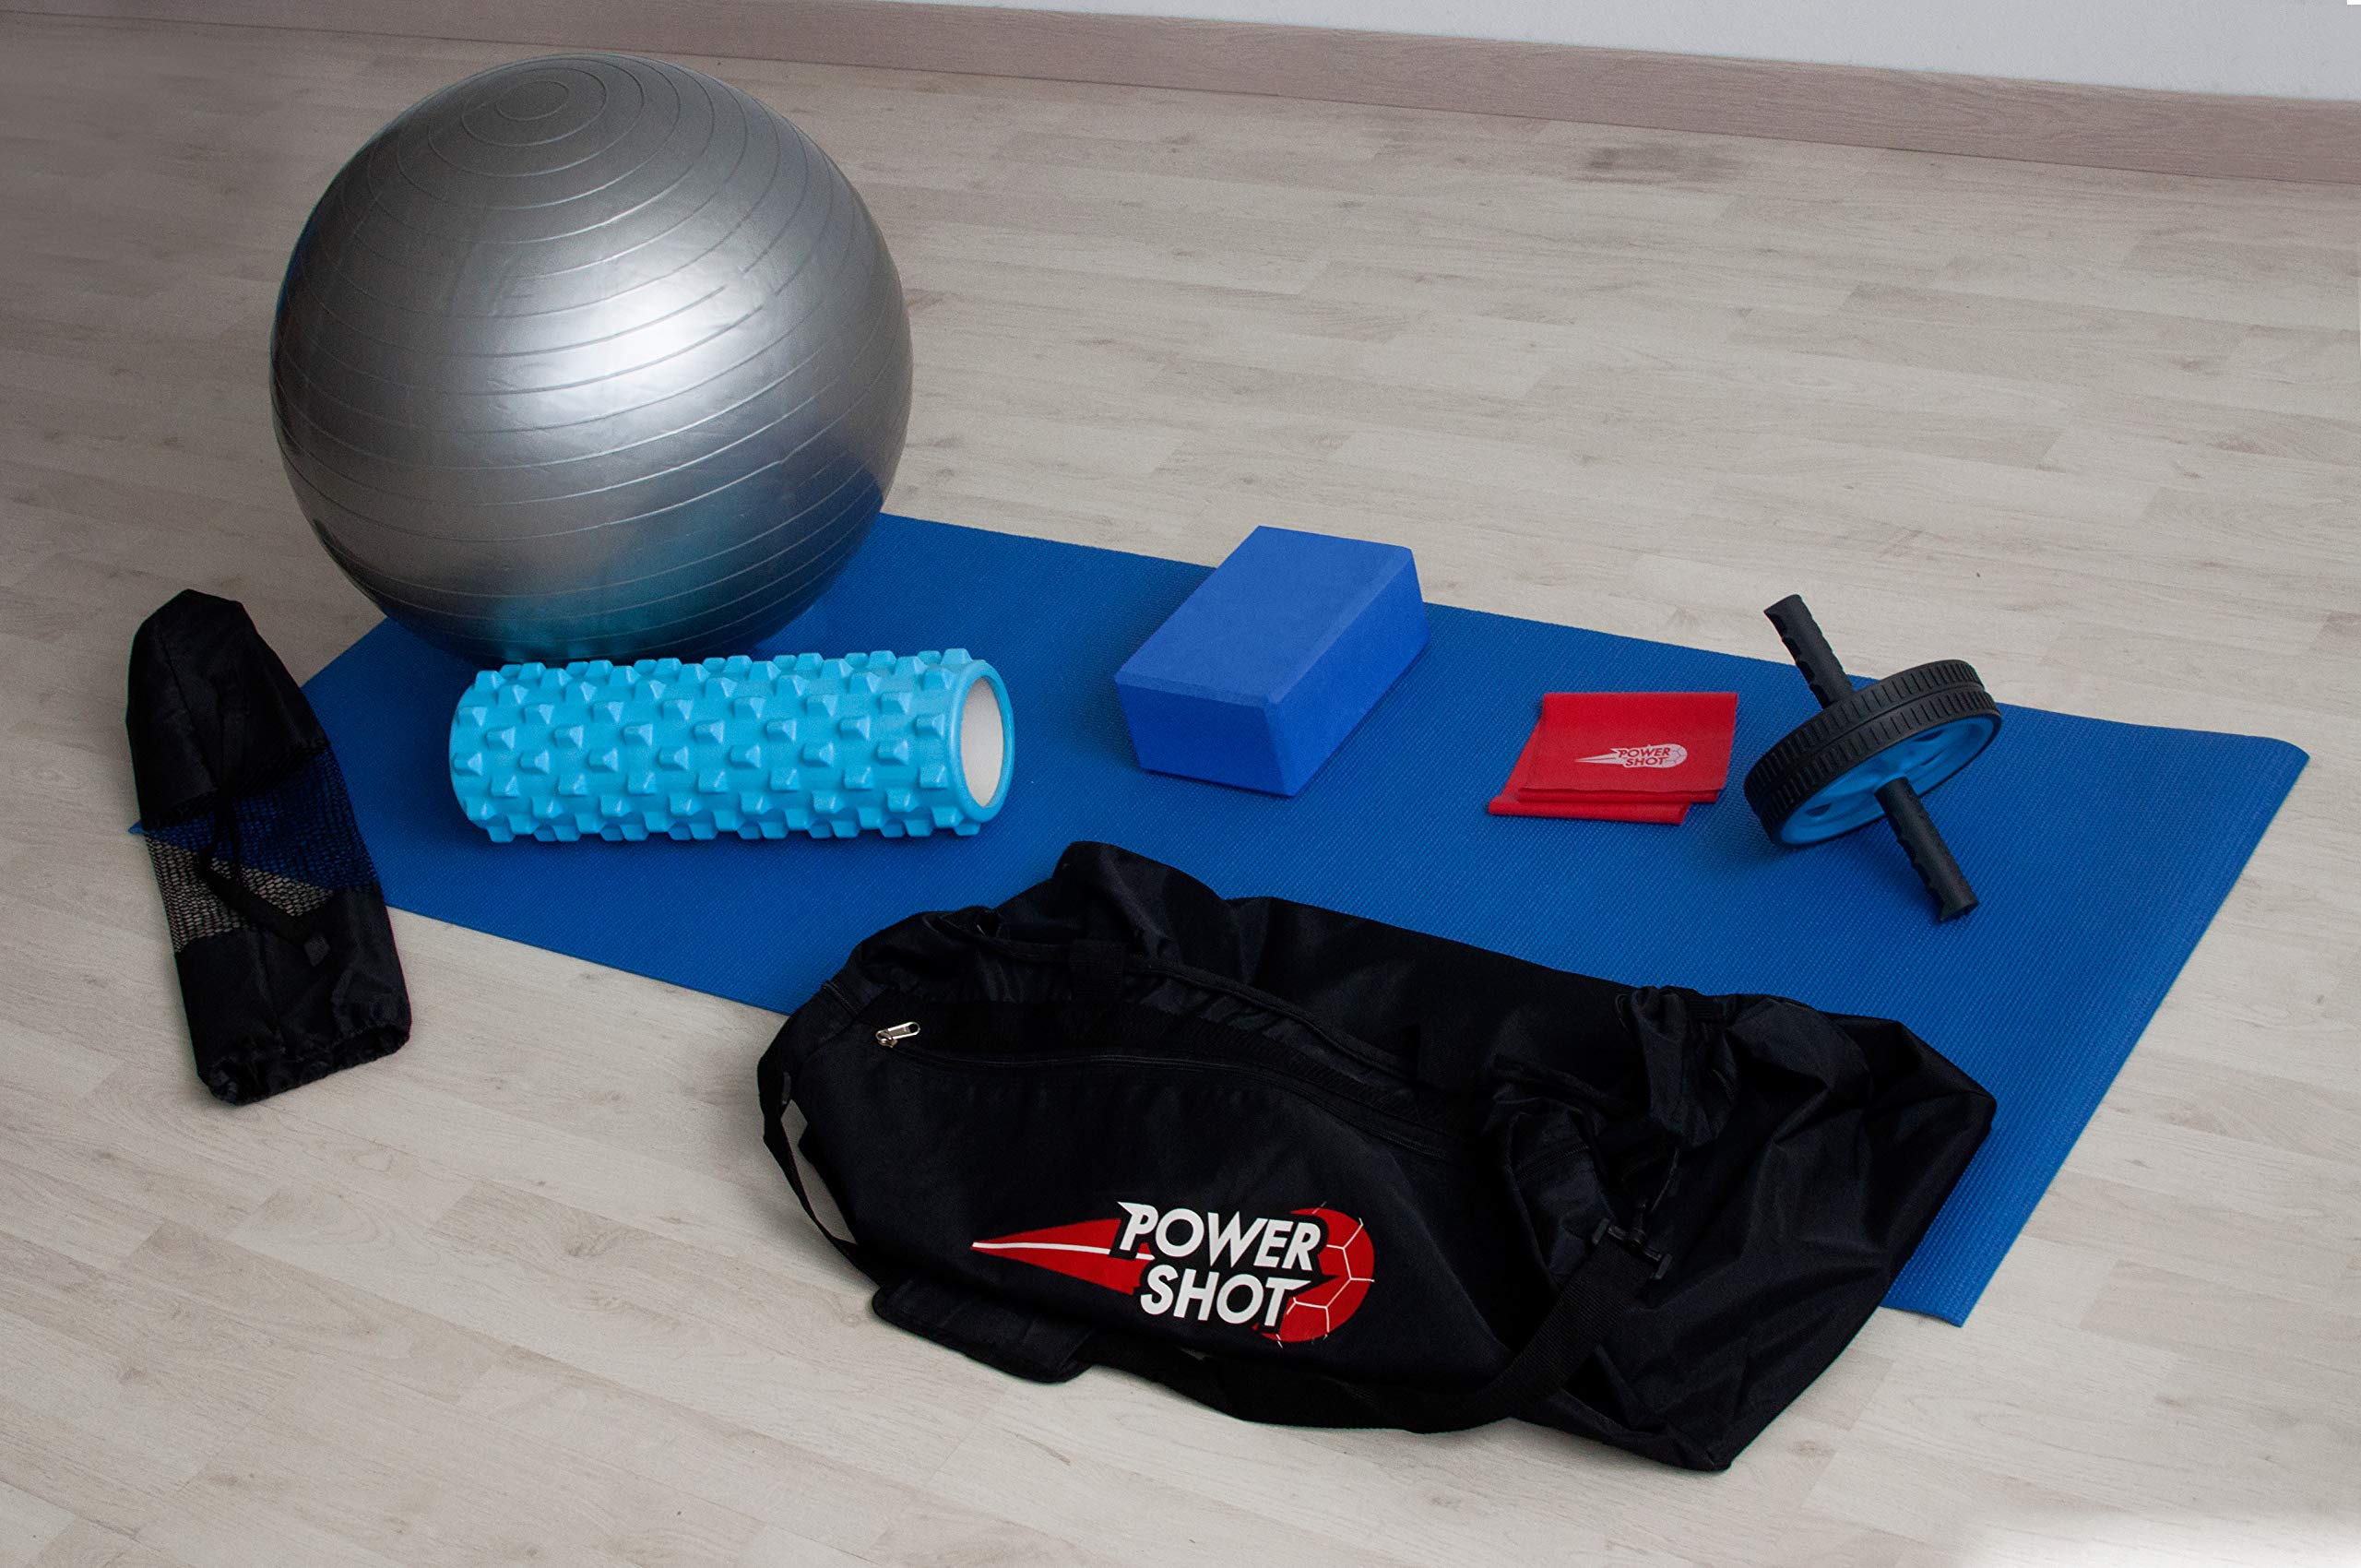 POWERSHOT Yoga-Kit - Perfekt, um Yoga bequem von zu Hause aus zu praktizieren! - Es enthält eine Yogamatte, einen Yogaball und vieles mehr! - Eine Sporttasche zum Transport des Kits ist enthalten!